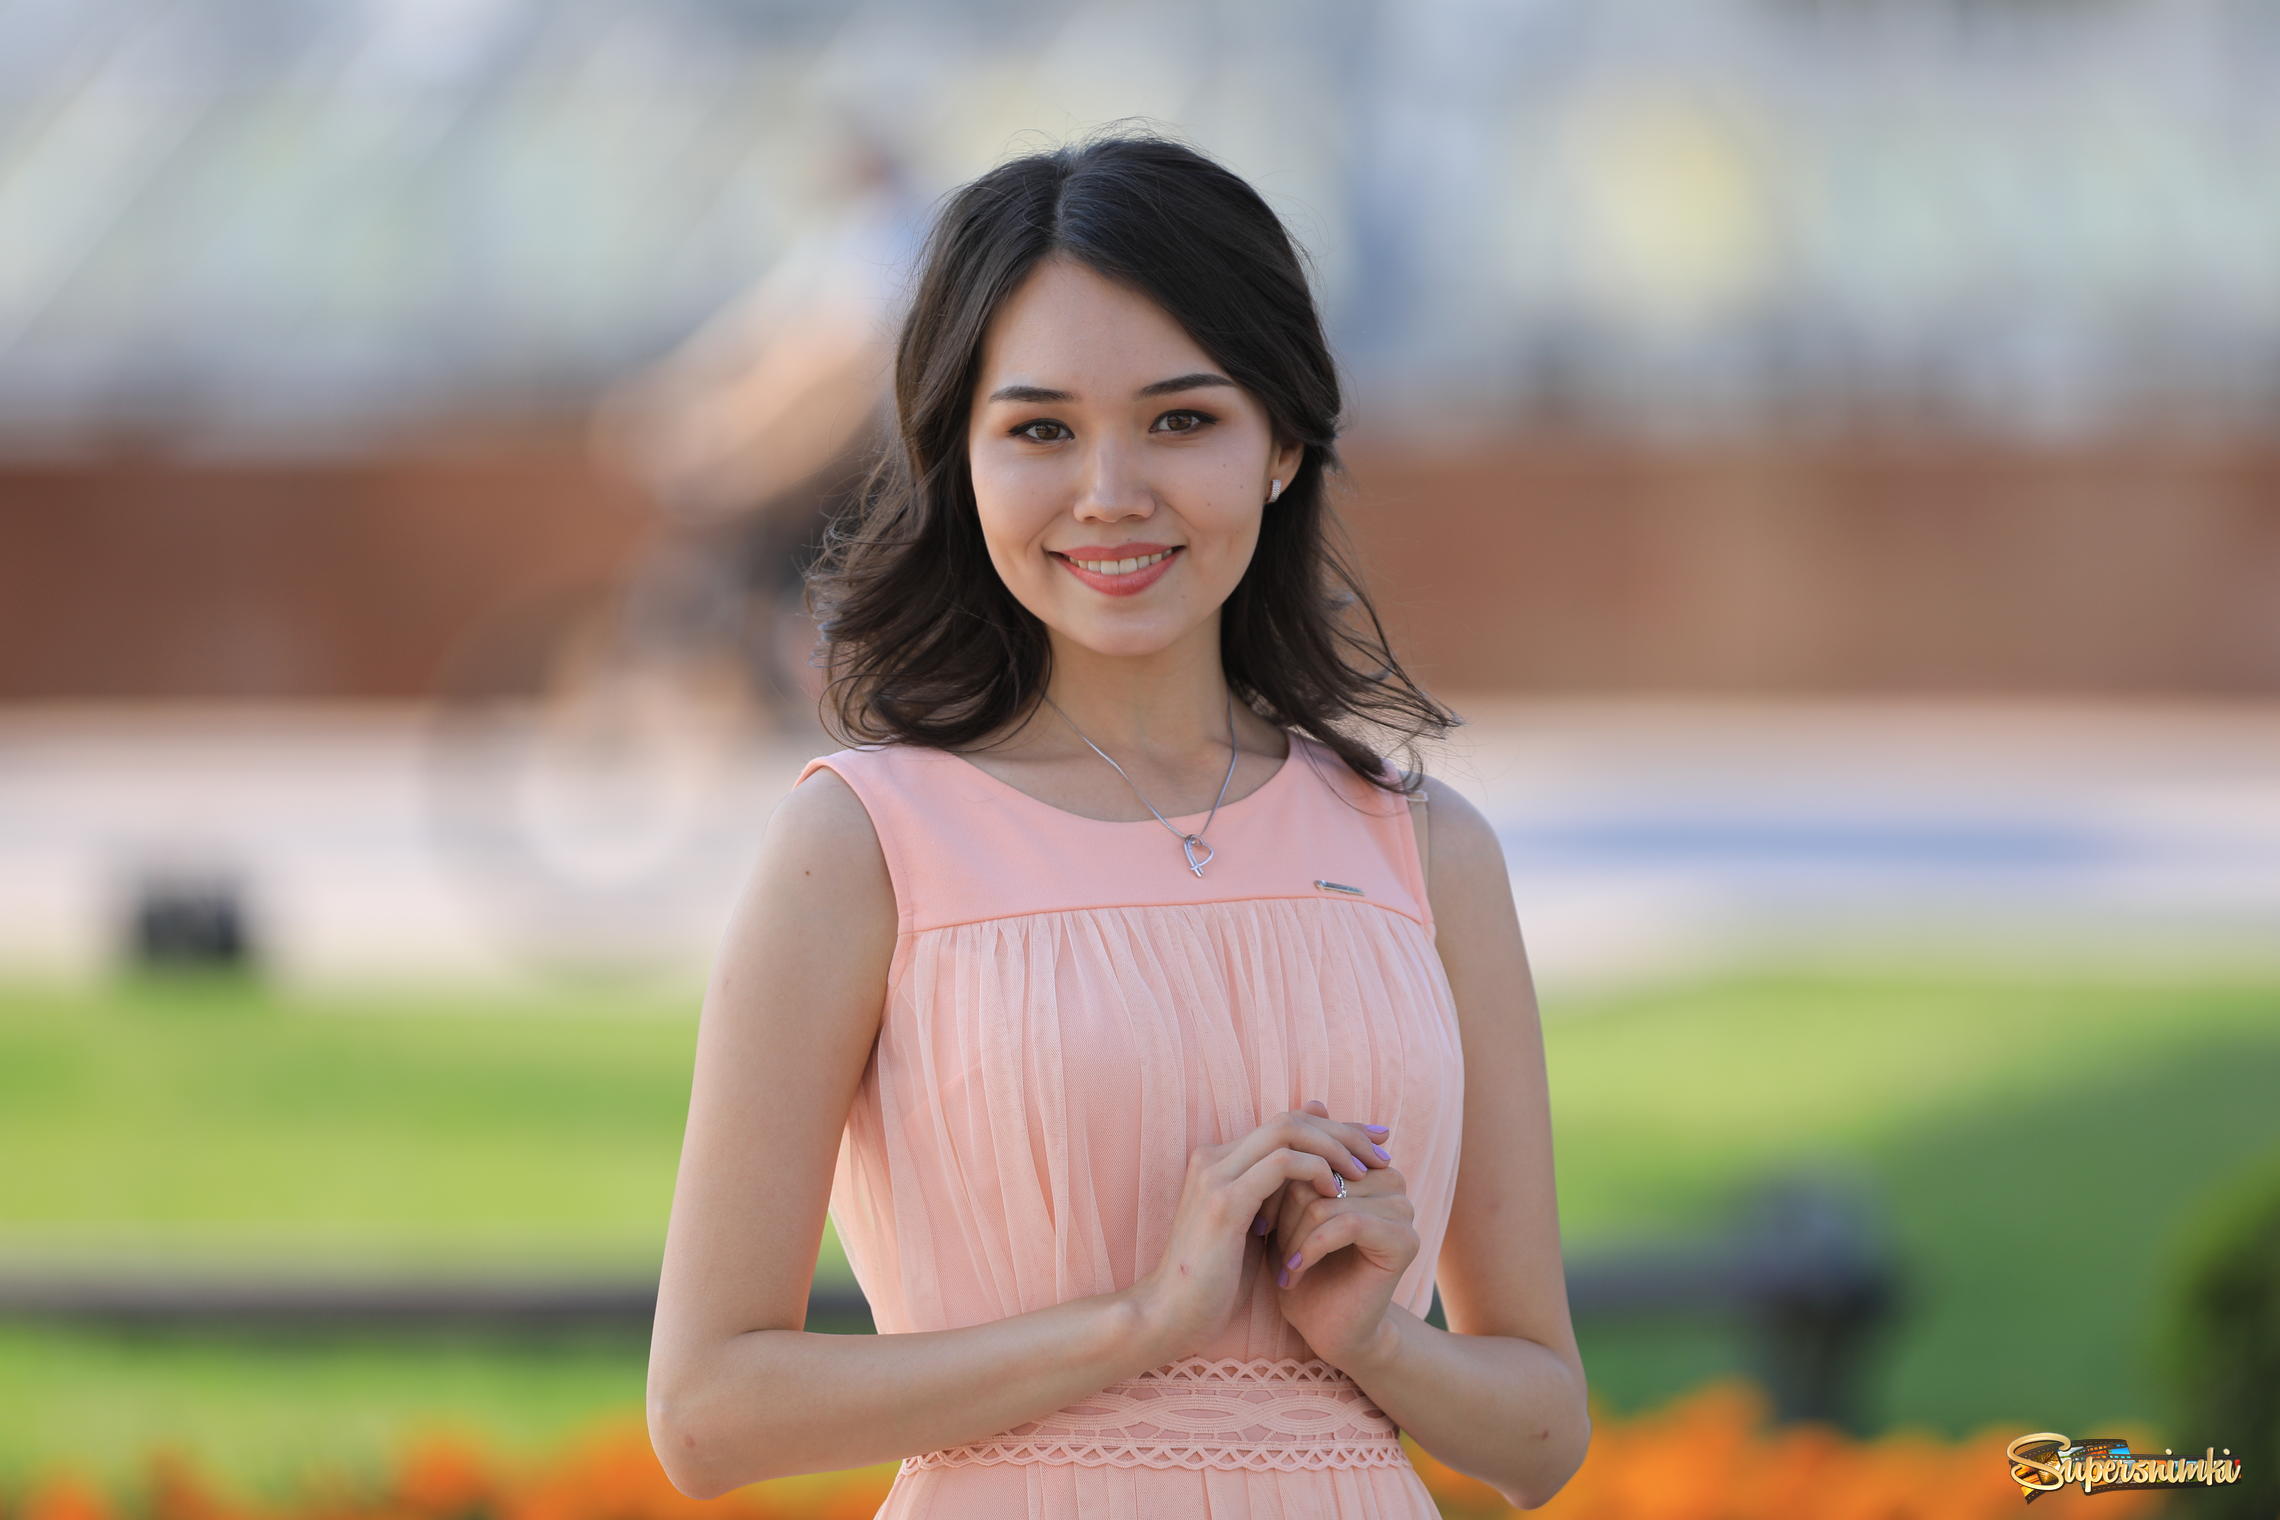 Красивые казахские женщины. Аелита Касымова казашка. Красивые казашки. Казахские красотки. Казахстанские девушки красивые.